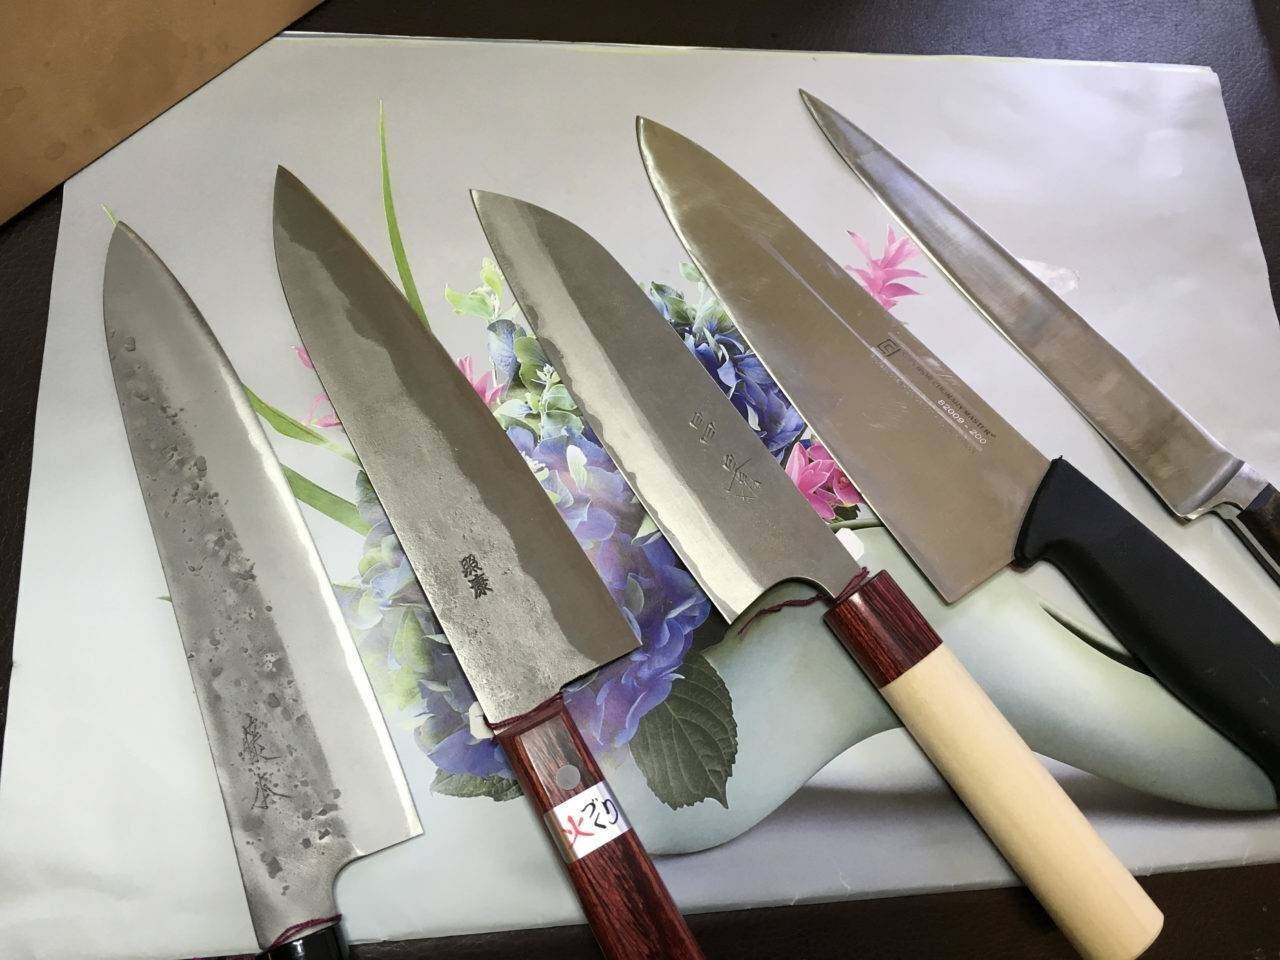 Knife Academy - Workshop knife sharpening